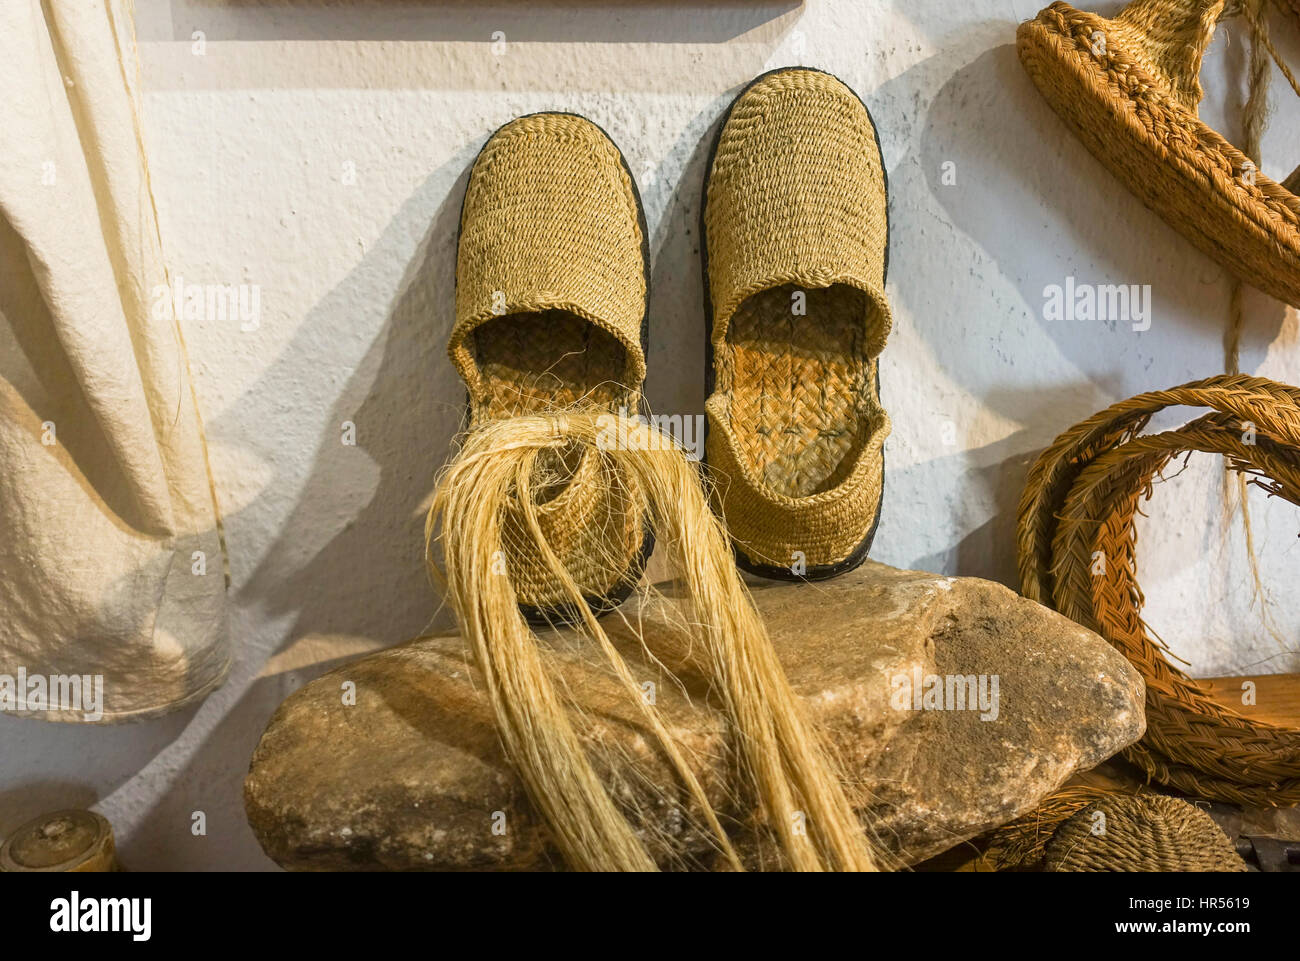 Une paire d'espadrilles, faite de sparterie, halfah, herbe ou herbe sparterie Musée ethnologique à Mijas, Andalousie, Espagne Banque D'Images